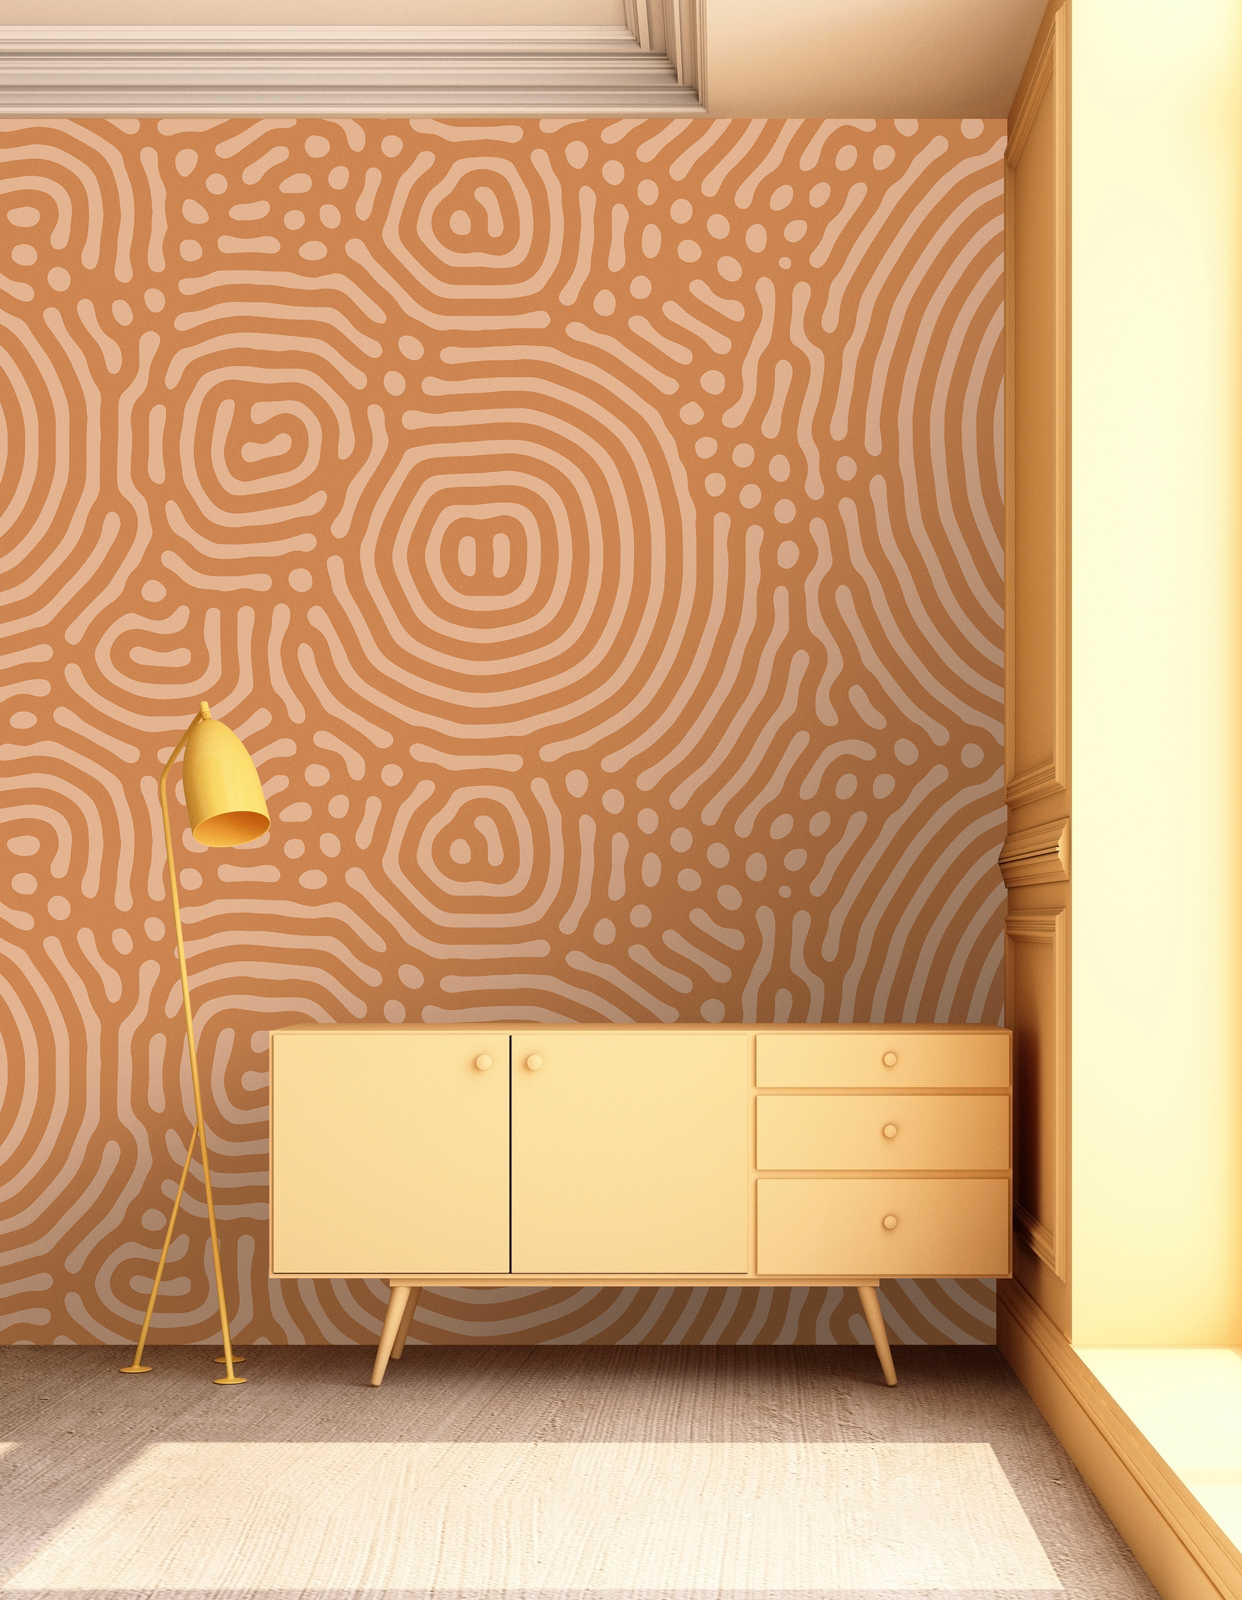             Sahel 2 - Papier peint orange motif labyrinthe terre cuite
        